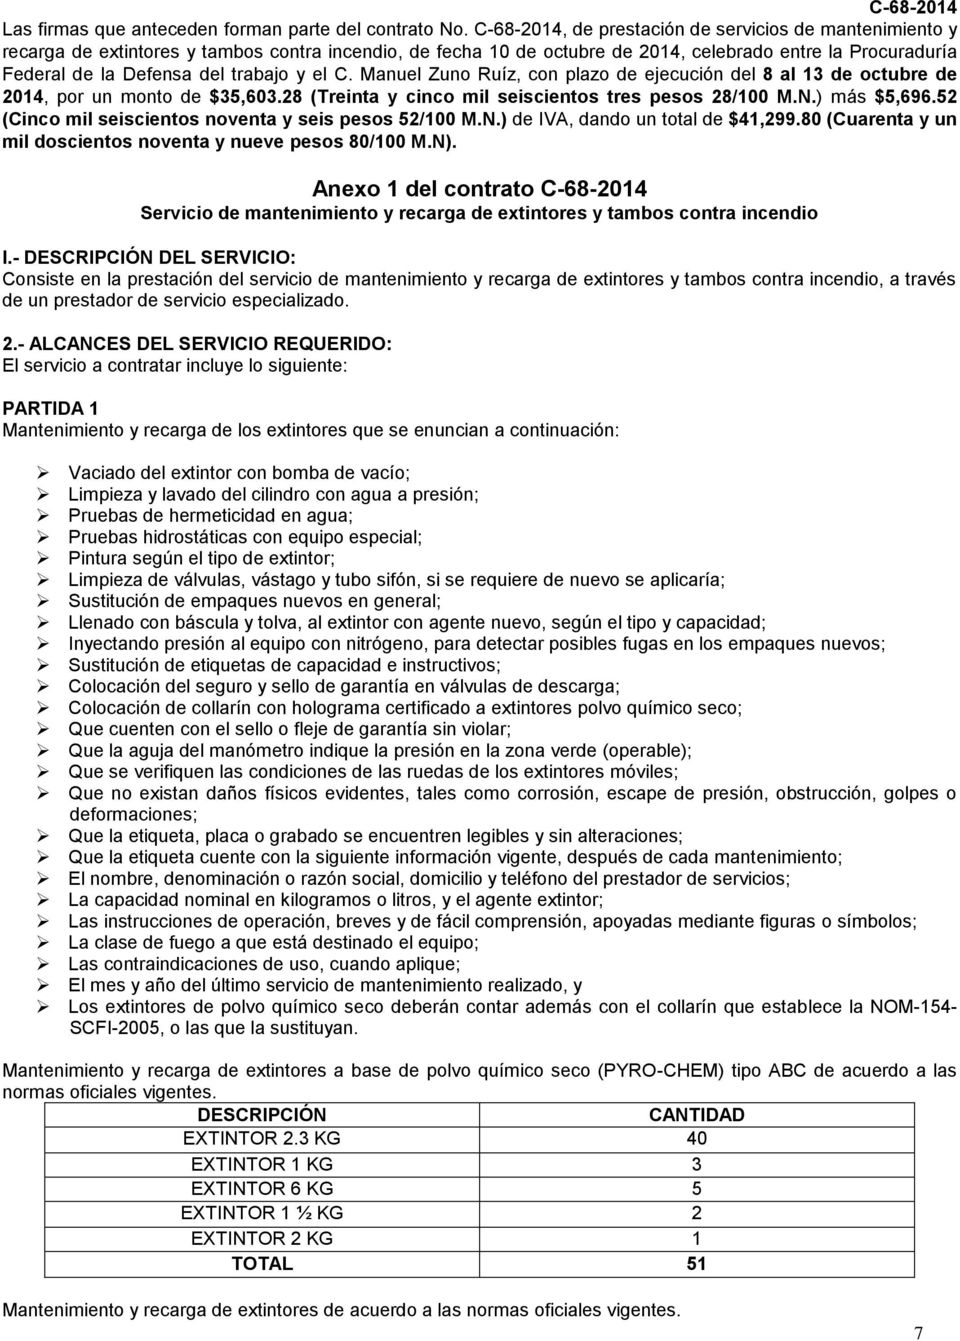 trabajo y el C. Manuel Zuno Ruíz, con plazo de ejecución del 8 al 13 de octubre de 2014, por un monto de $35,603.28 (Treinta y cinco mil seiscientos tres pesos 28/100 M.N.) más $5,696.